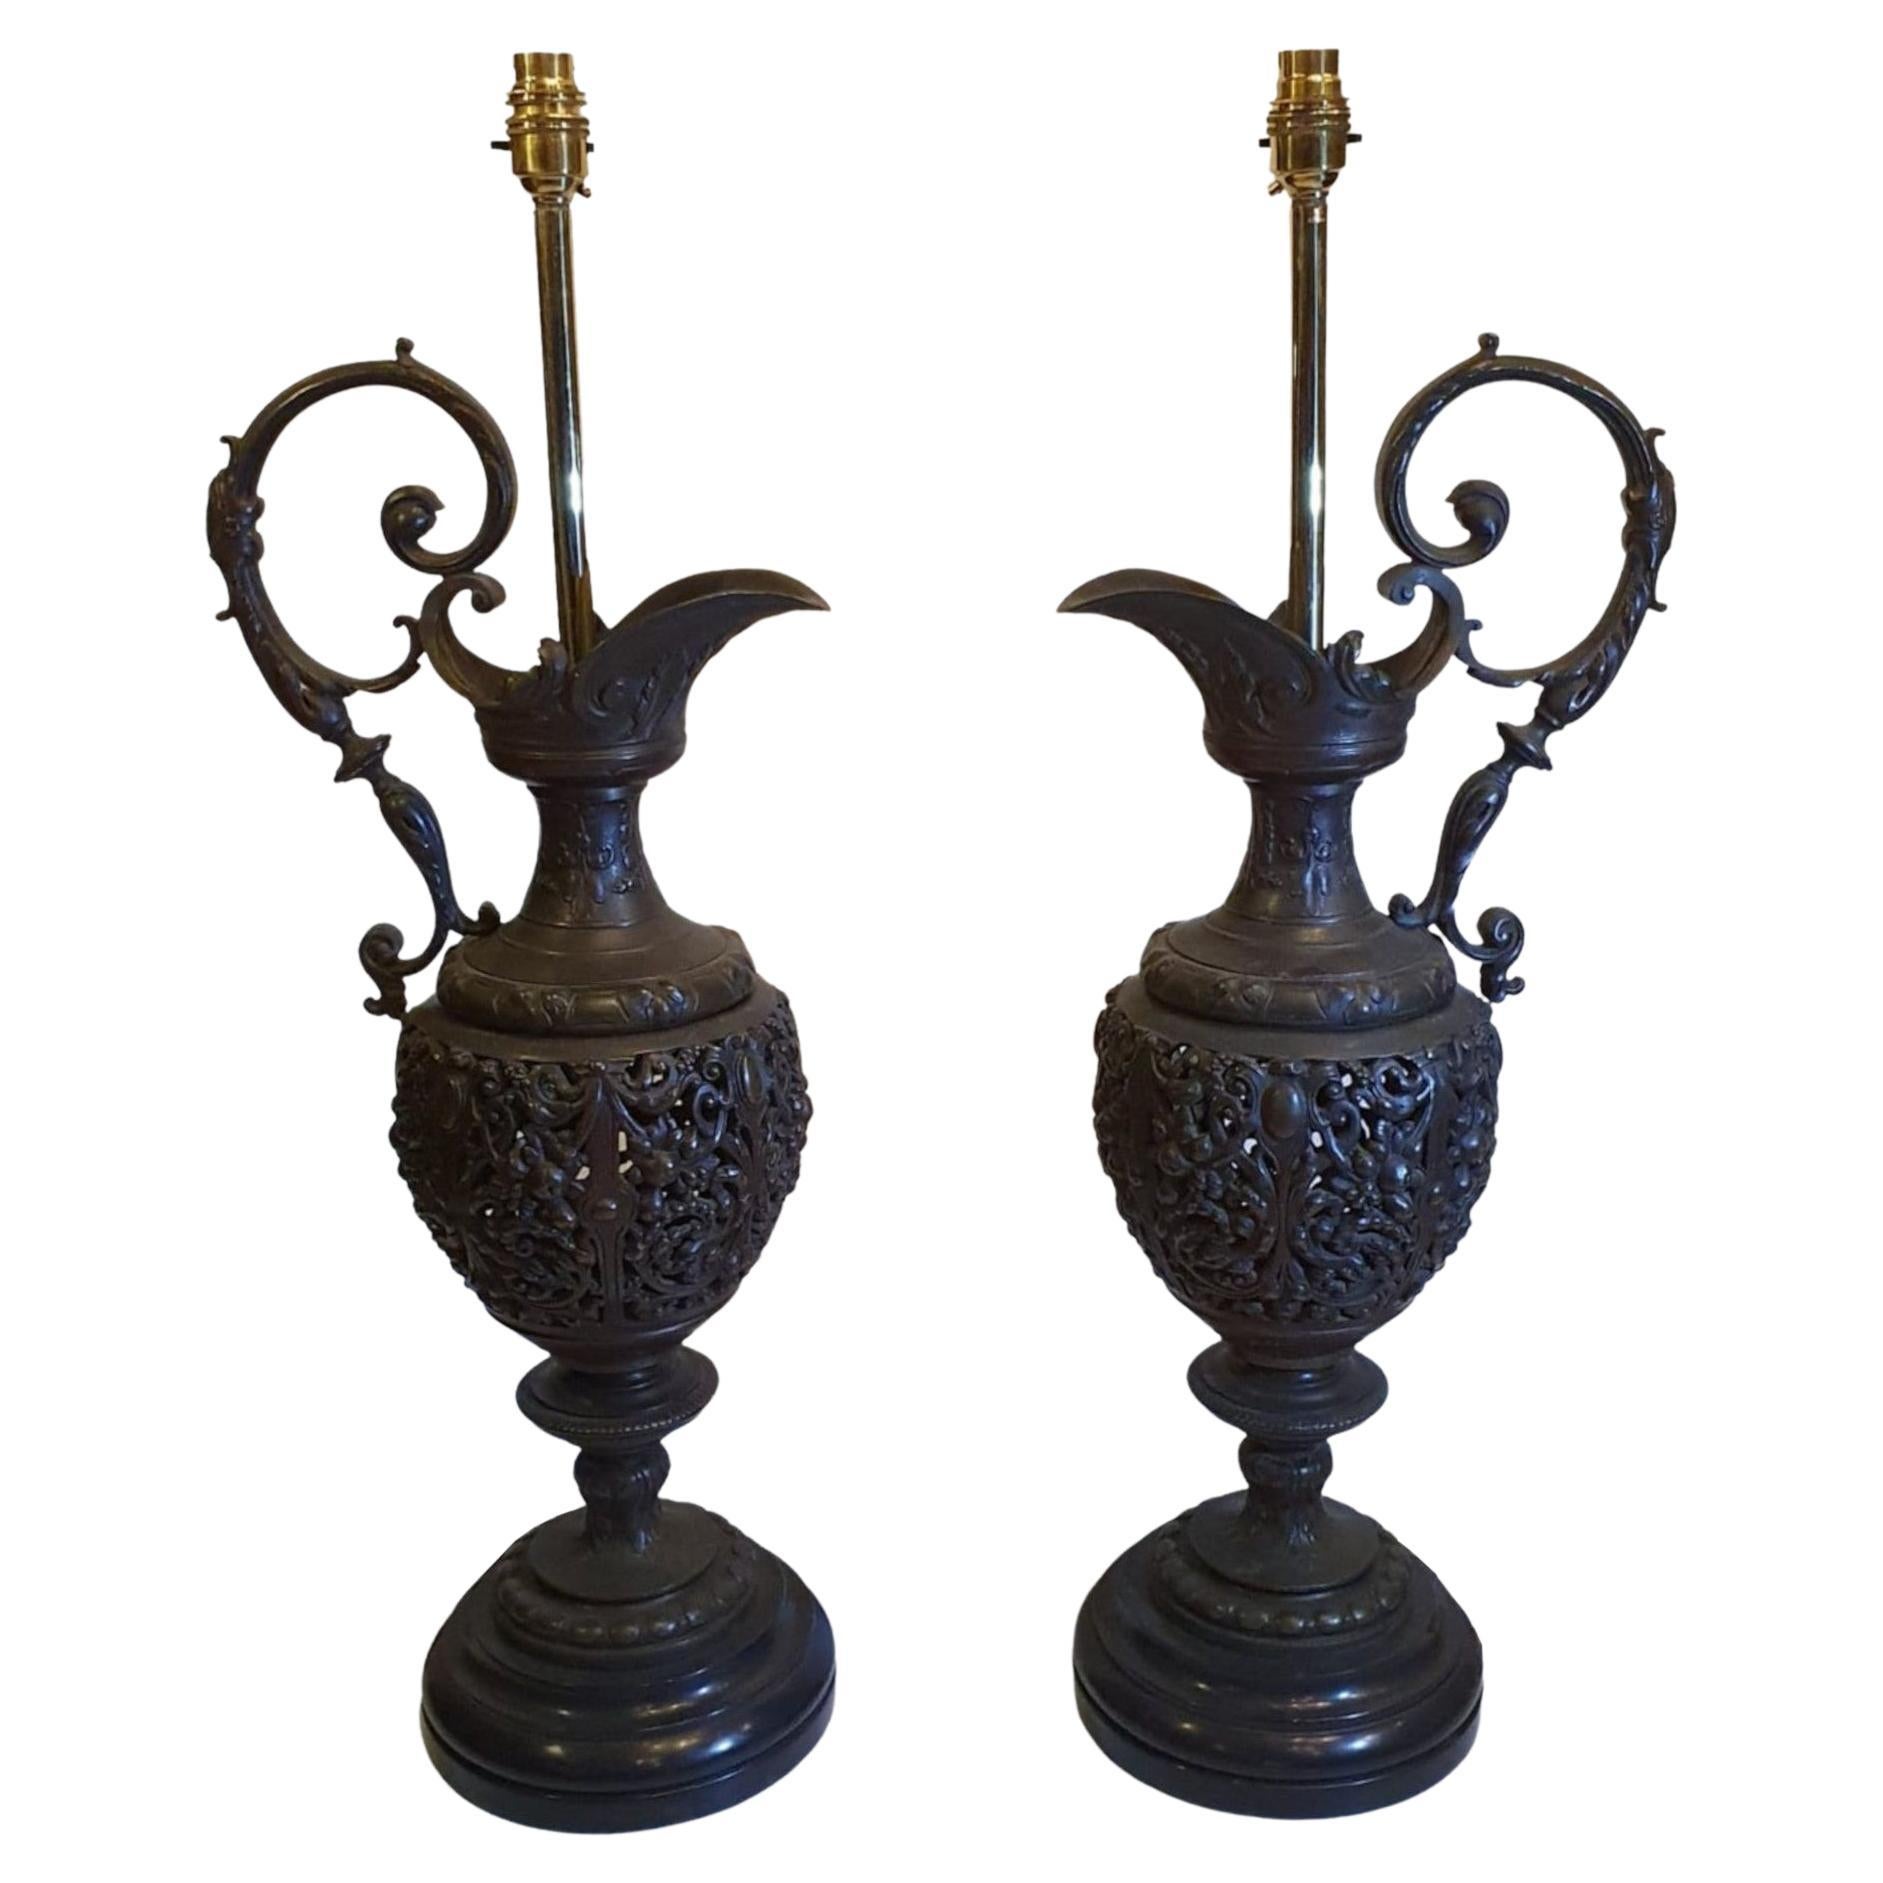 Rare paire d'aiguières en bronze du 19ème siècle transformées en lampes de bureau